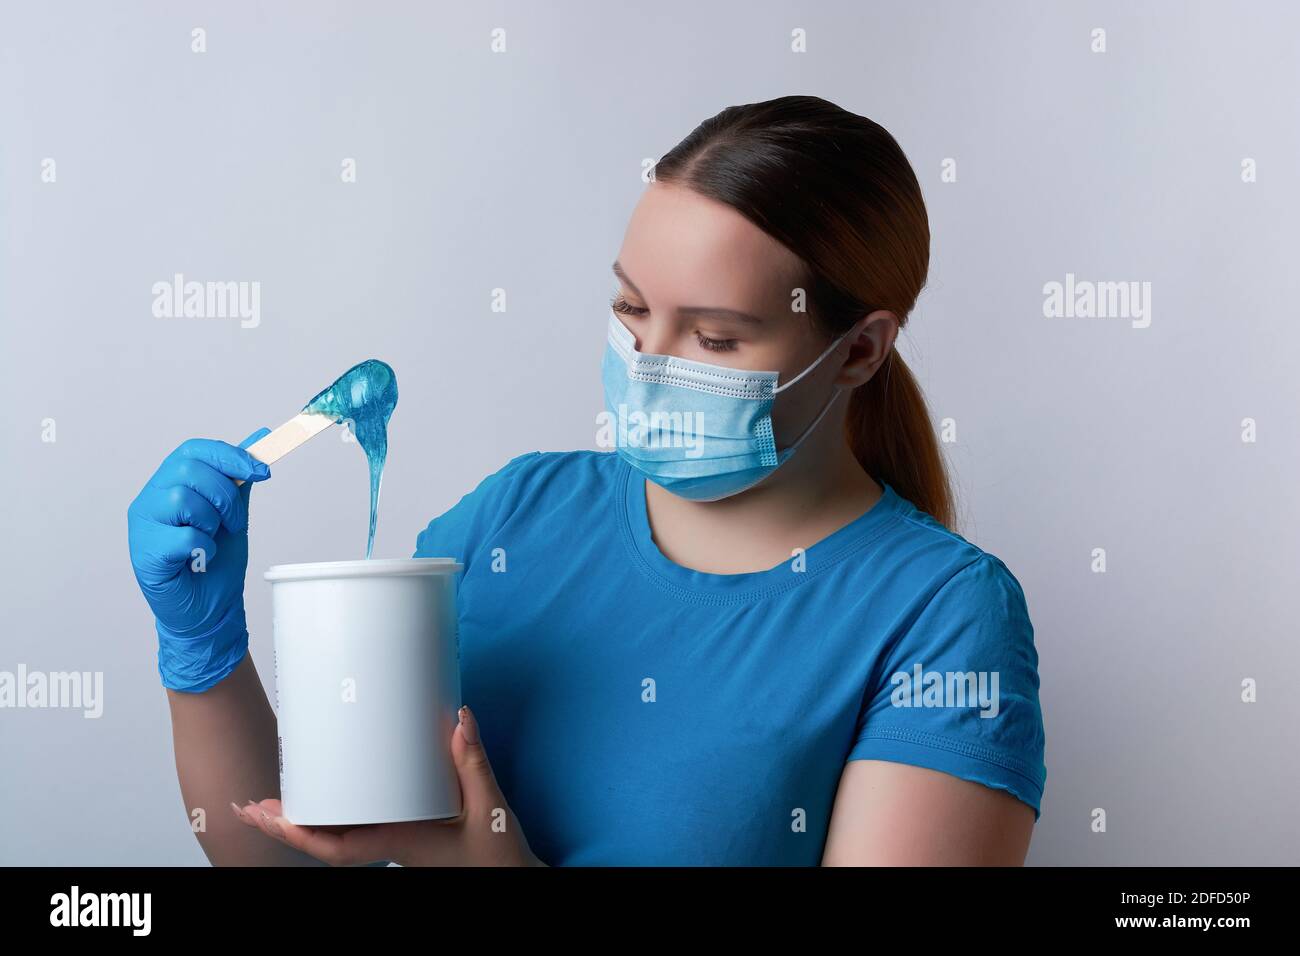 Un maître sugaring en gants bleus et un masque médical tient un bâton de cire de sucre bleu. Épilation et concept de beauté Banque D'Images